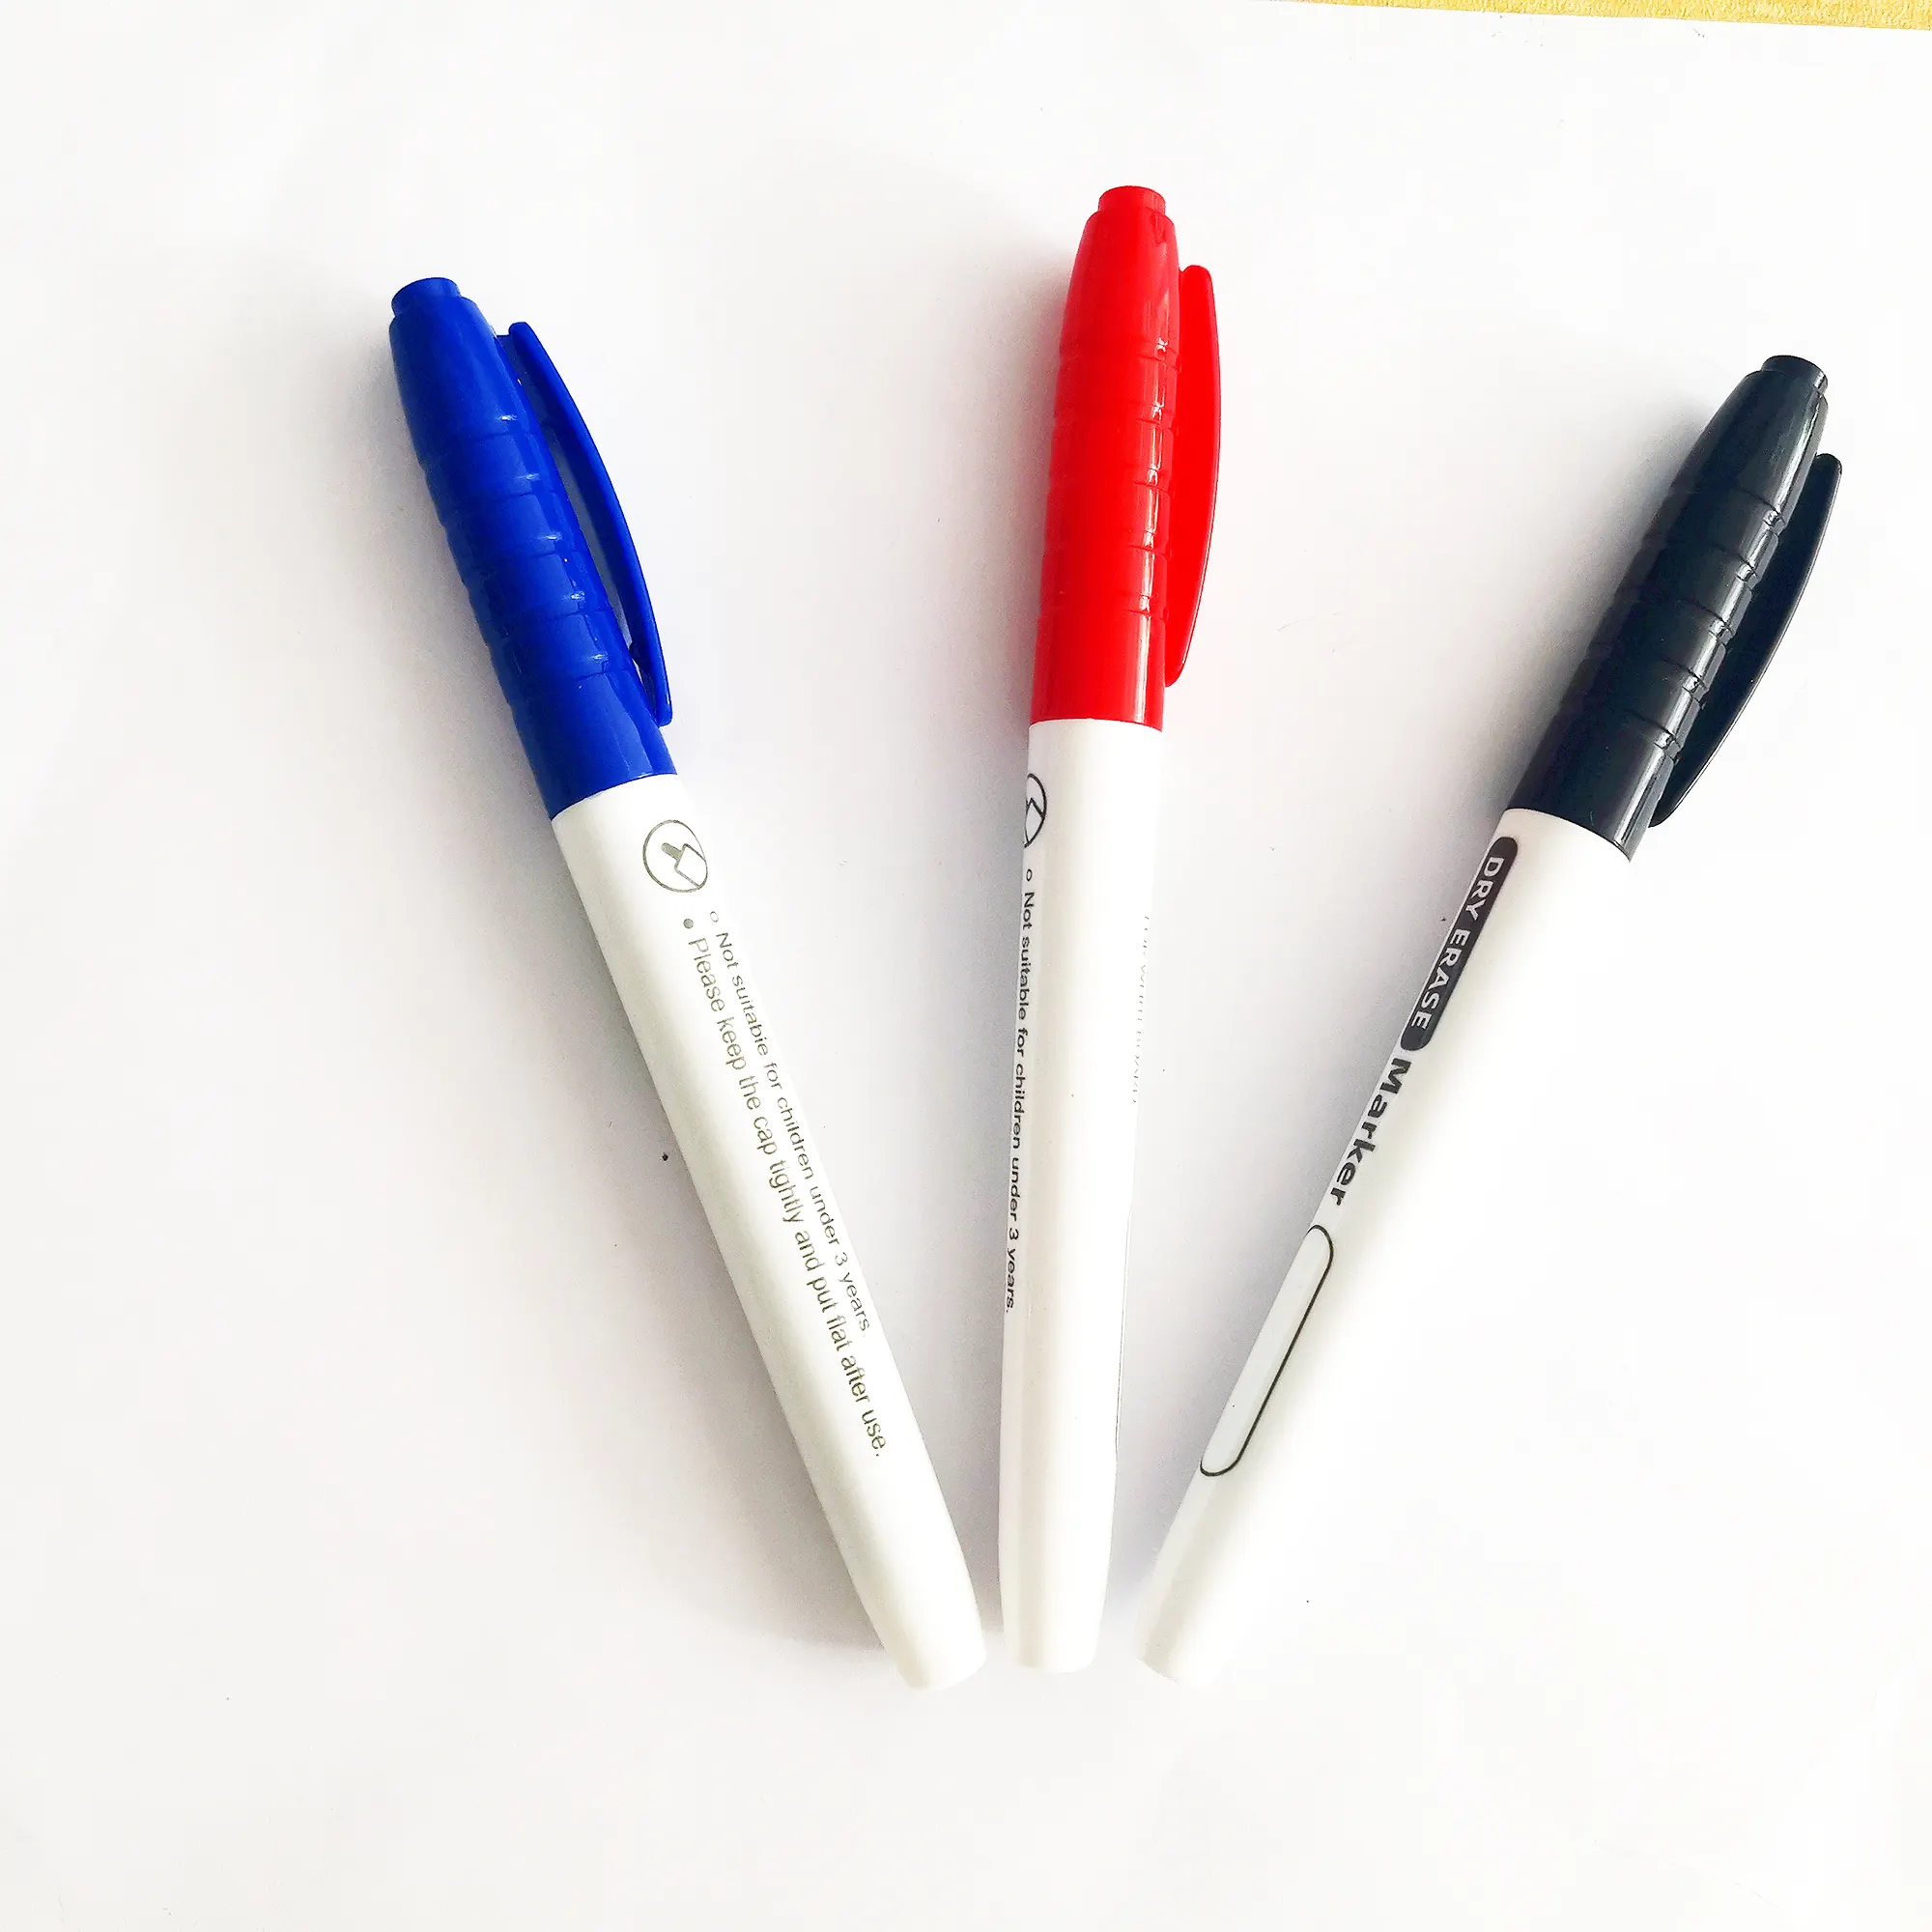 Kuru silme ultra ince ucu işaretleyici 0.5mm beyaz tahta İşaretleyiciler kalemler